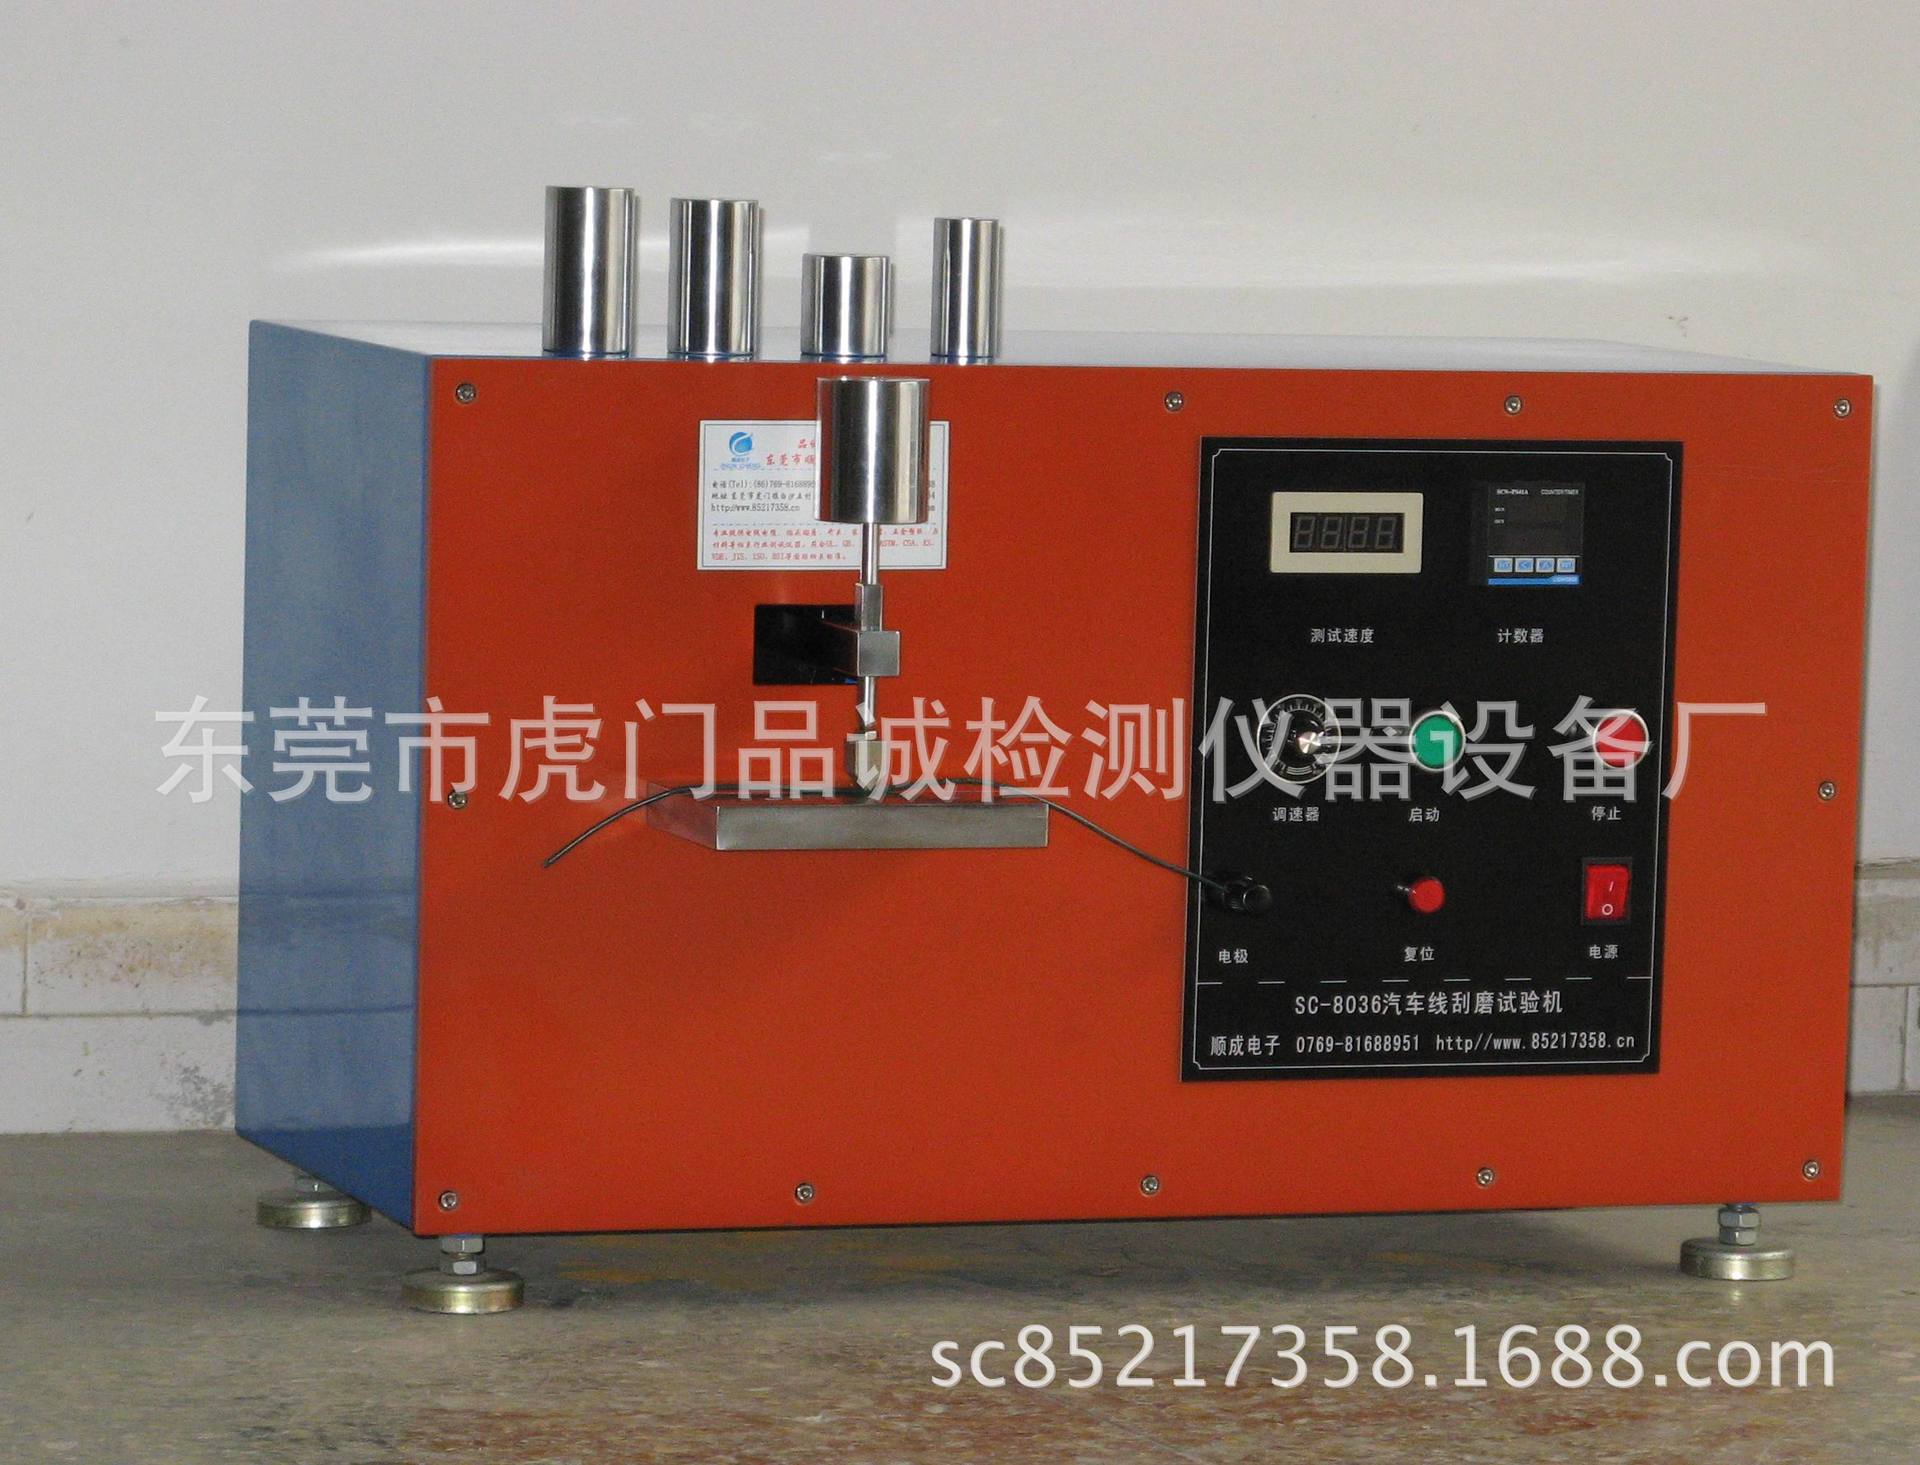 汽车电线刮磨试验机SC-8036   东莞汽车线刮磨测试仪厂家示例图6